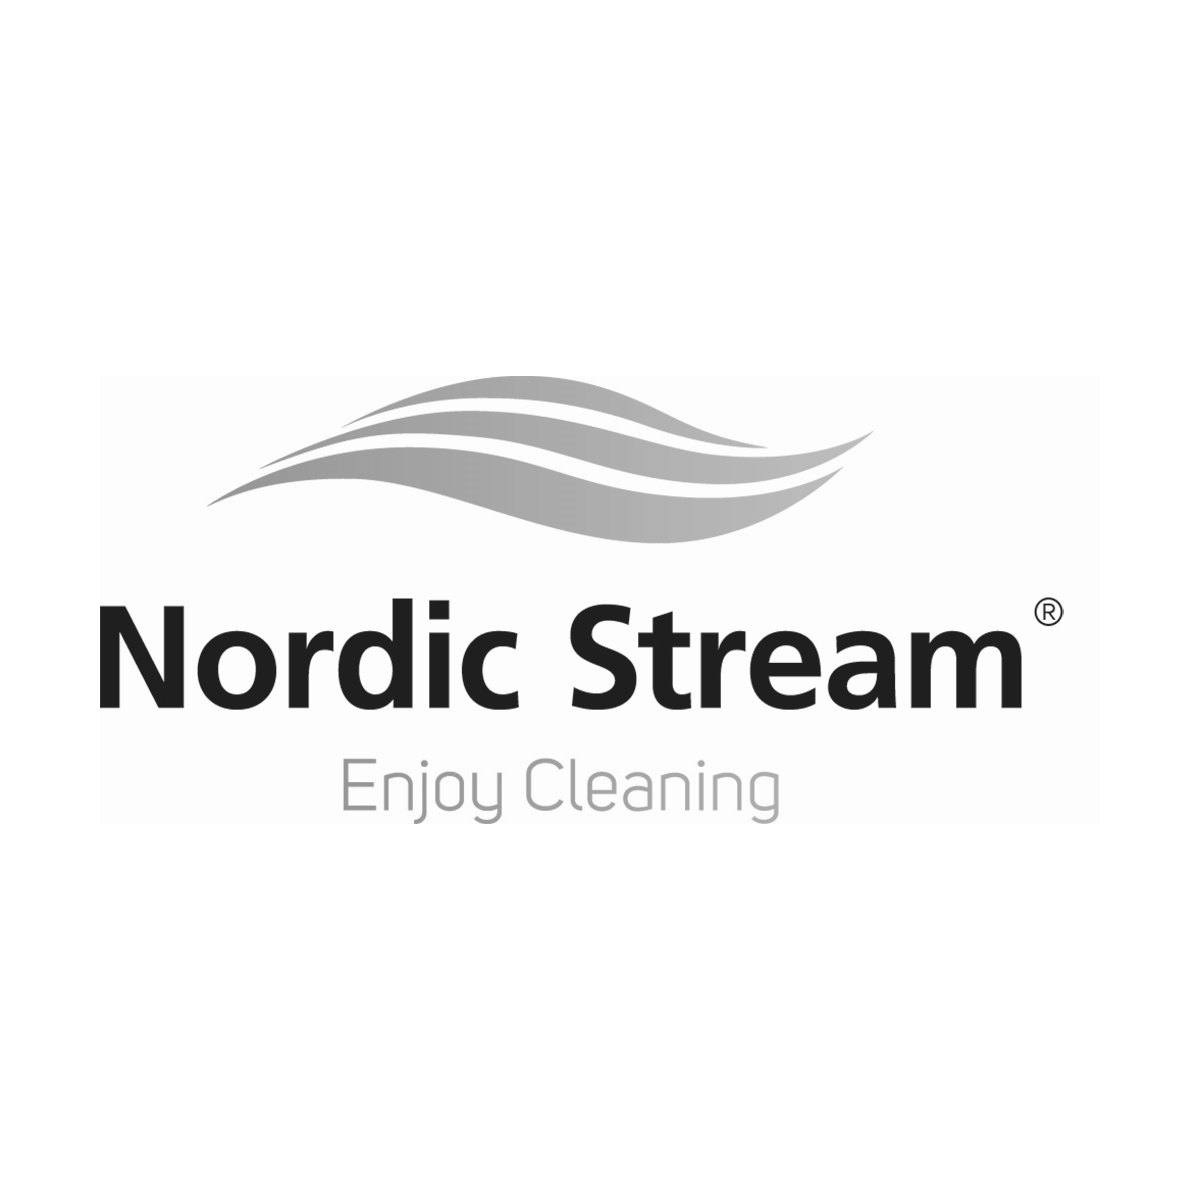 Nordic Stream